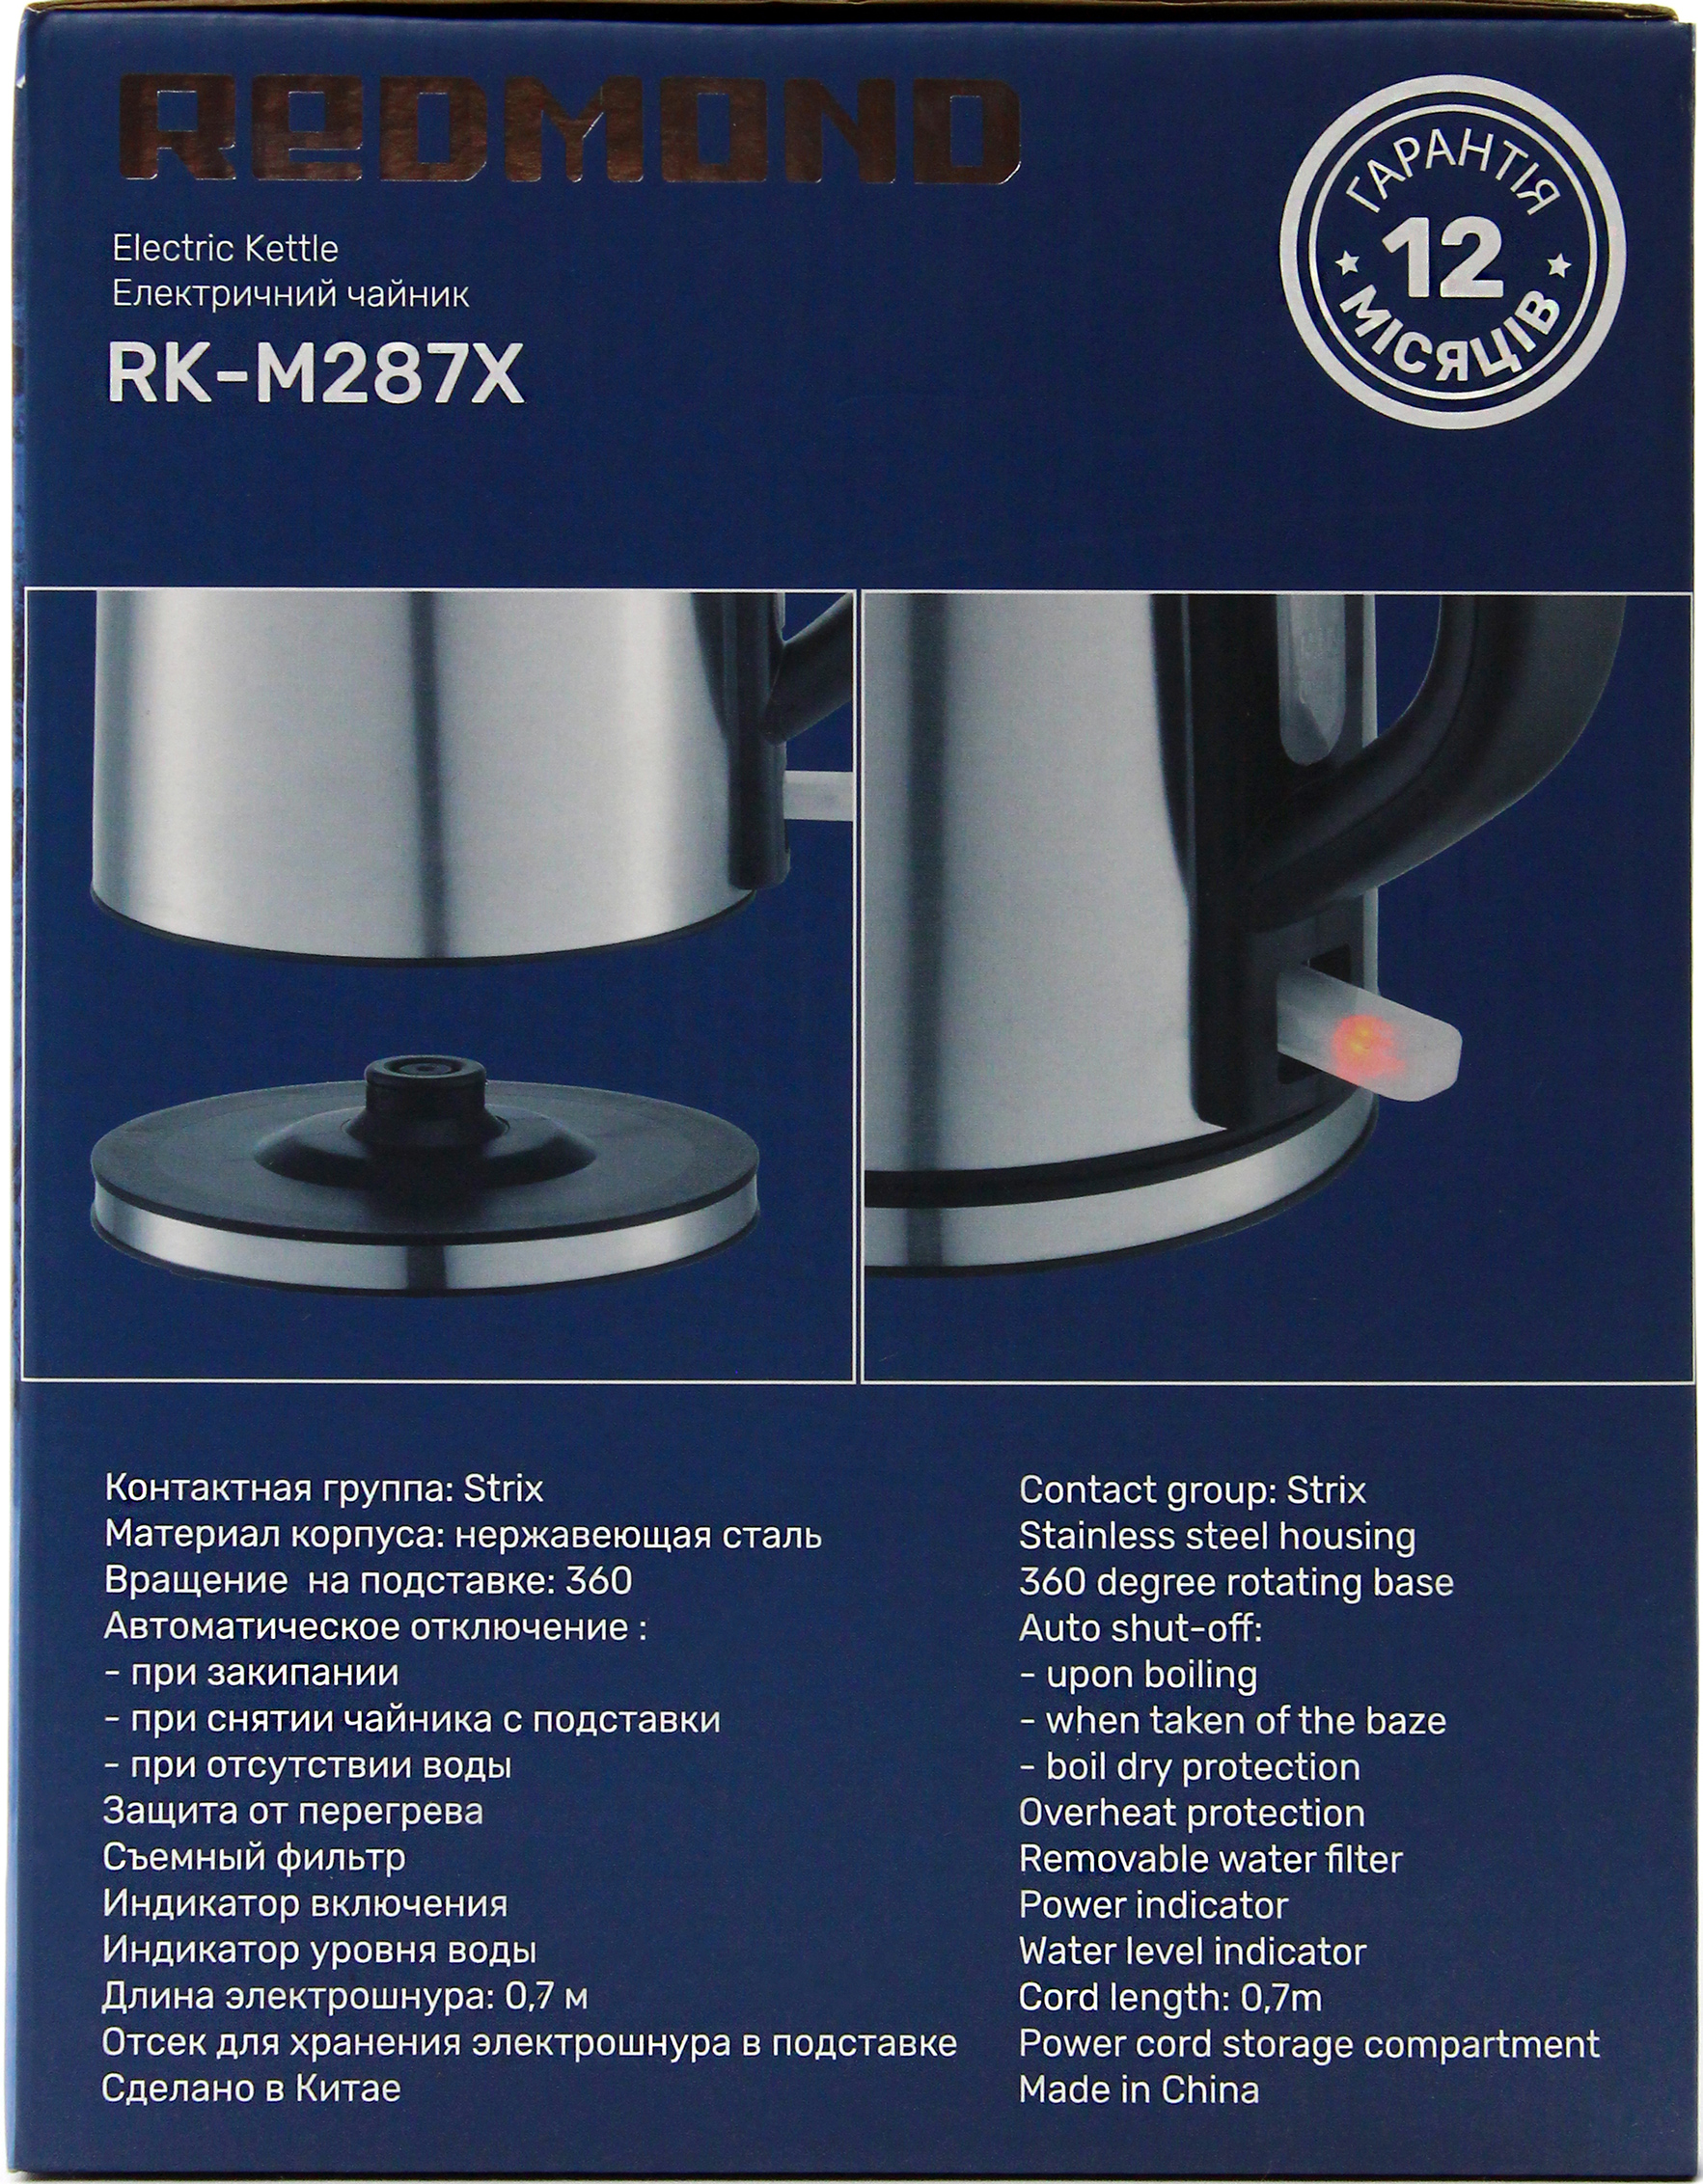 Электрочайник Redmond RK-M287X характеристики - фотография 7